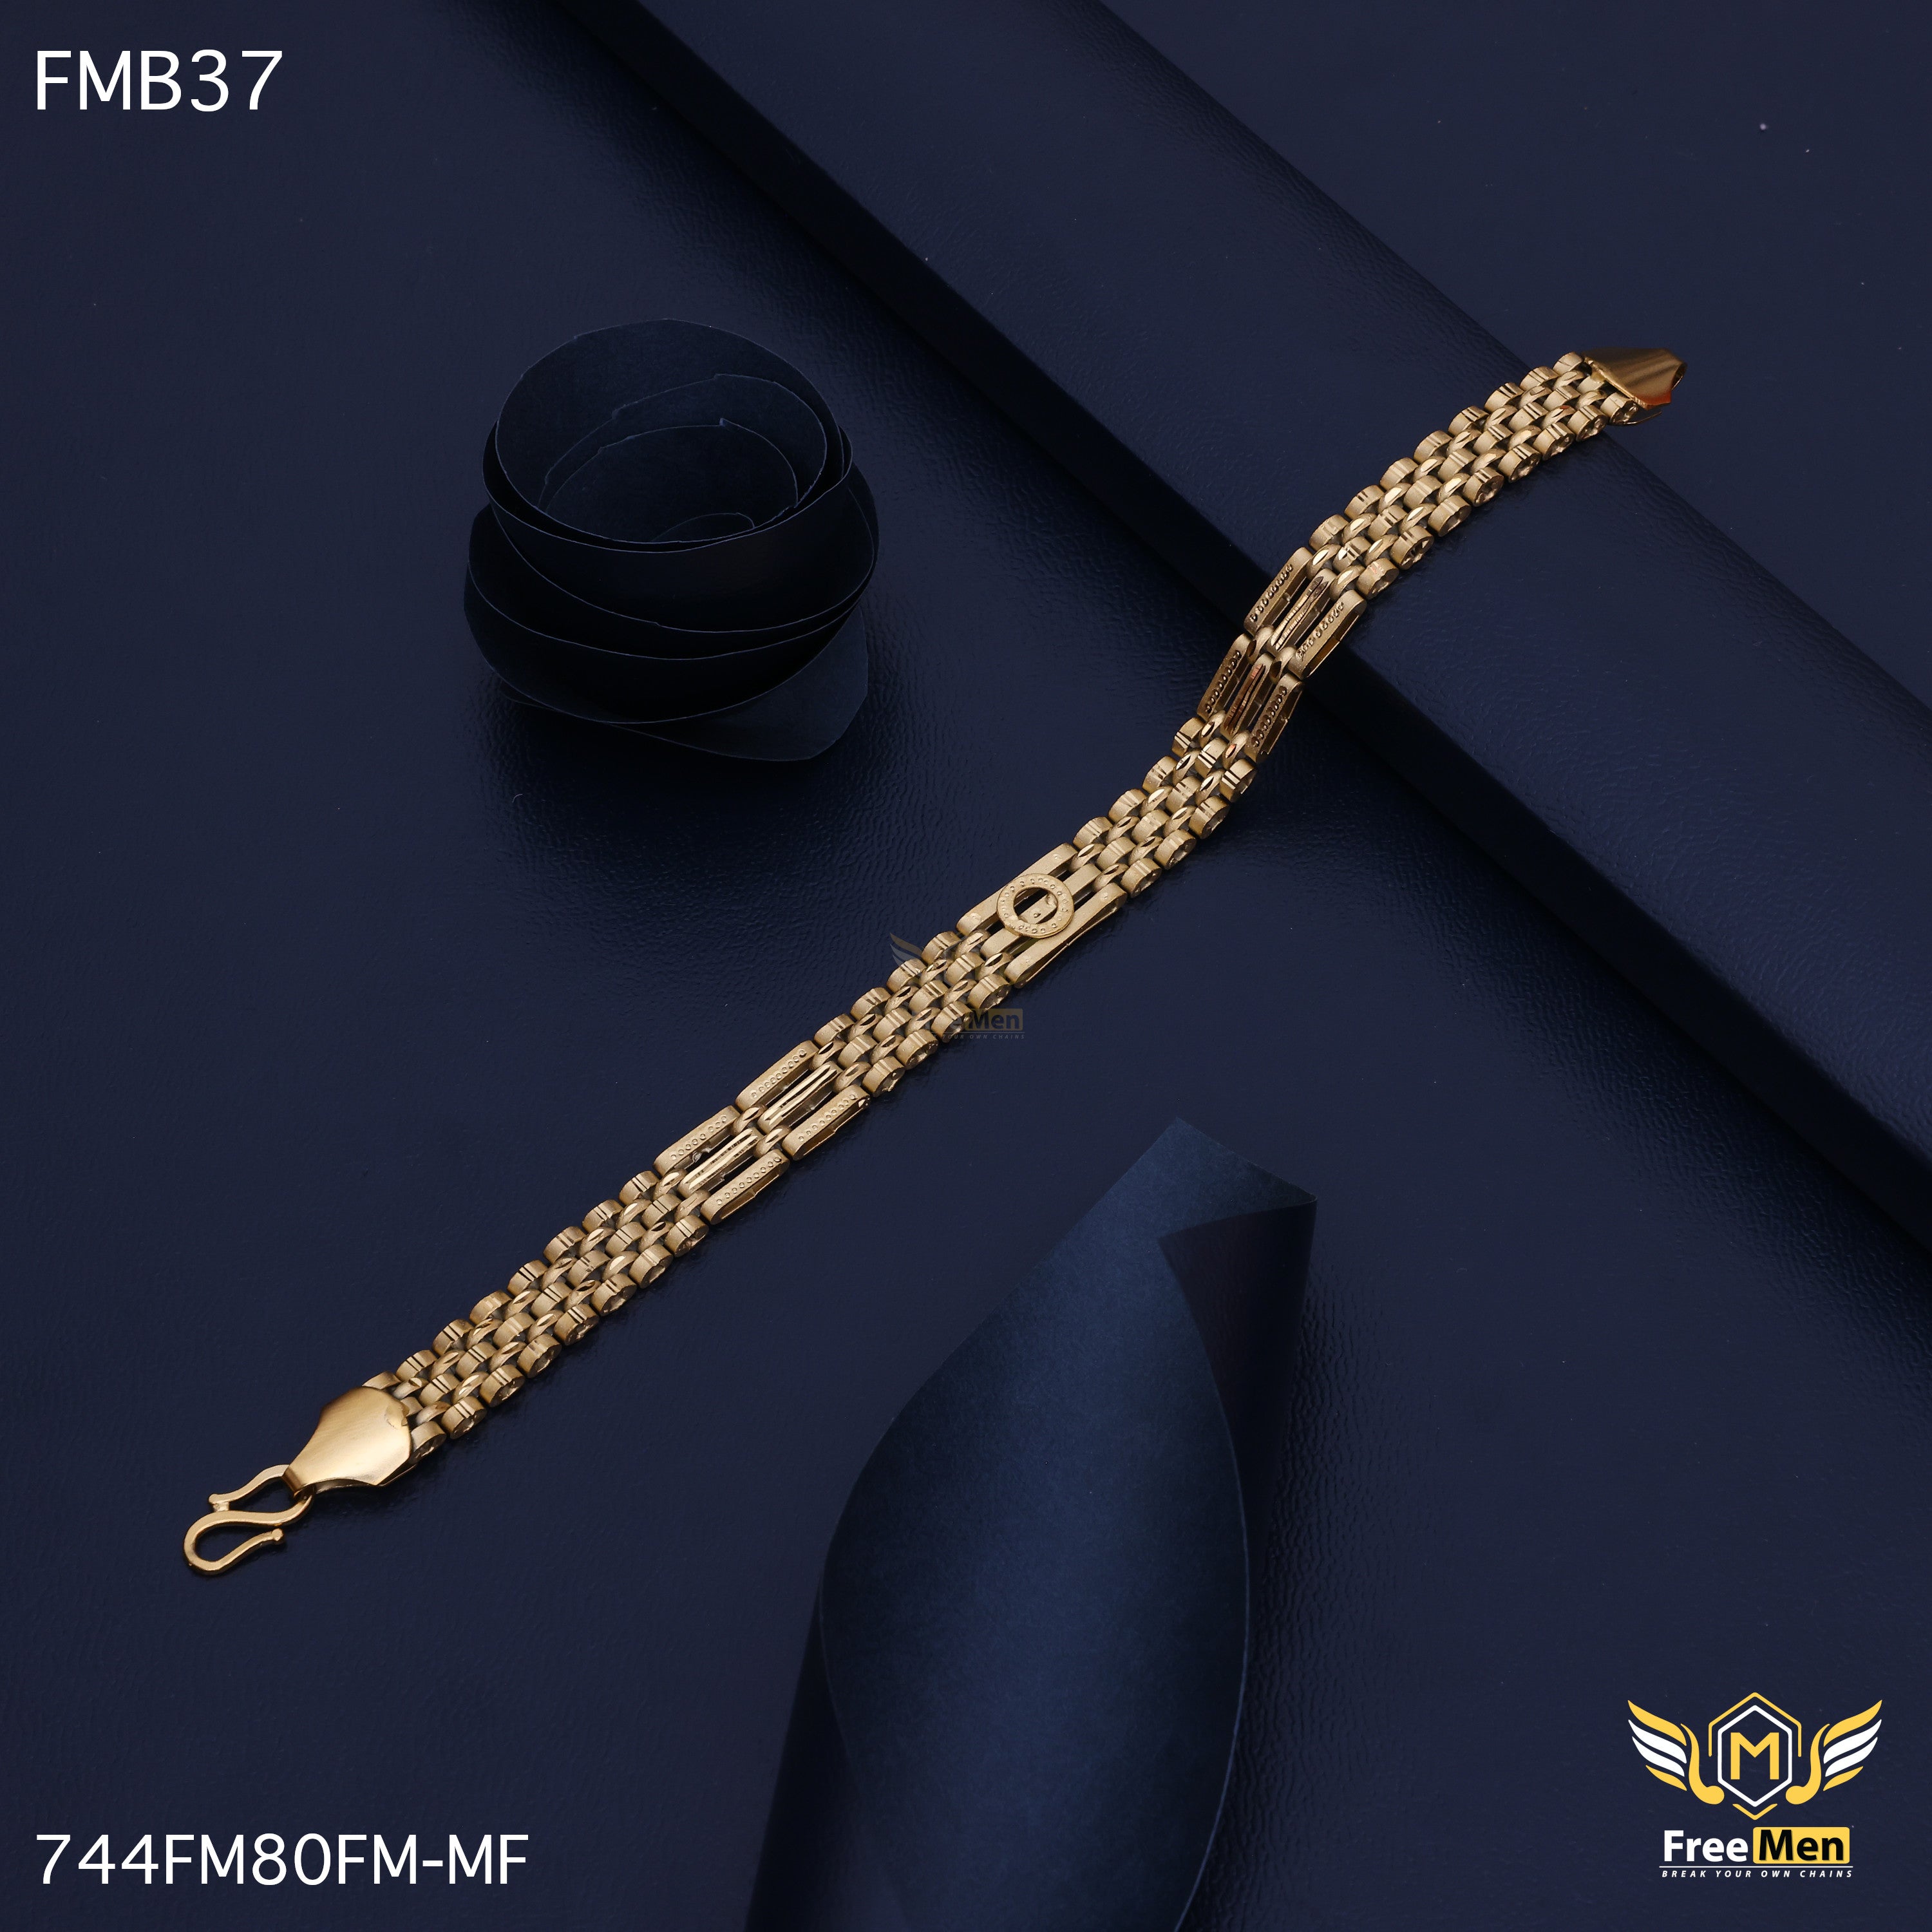 Bracelet Colourful Set Of 2 GiftSend Jewellery Gifts Online JVS1232172  IGPcom